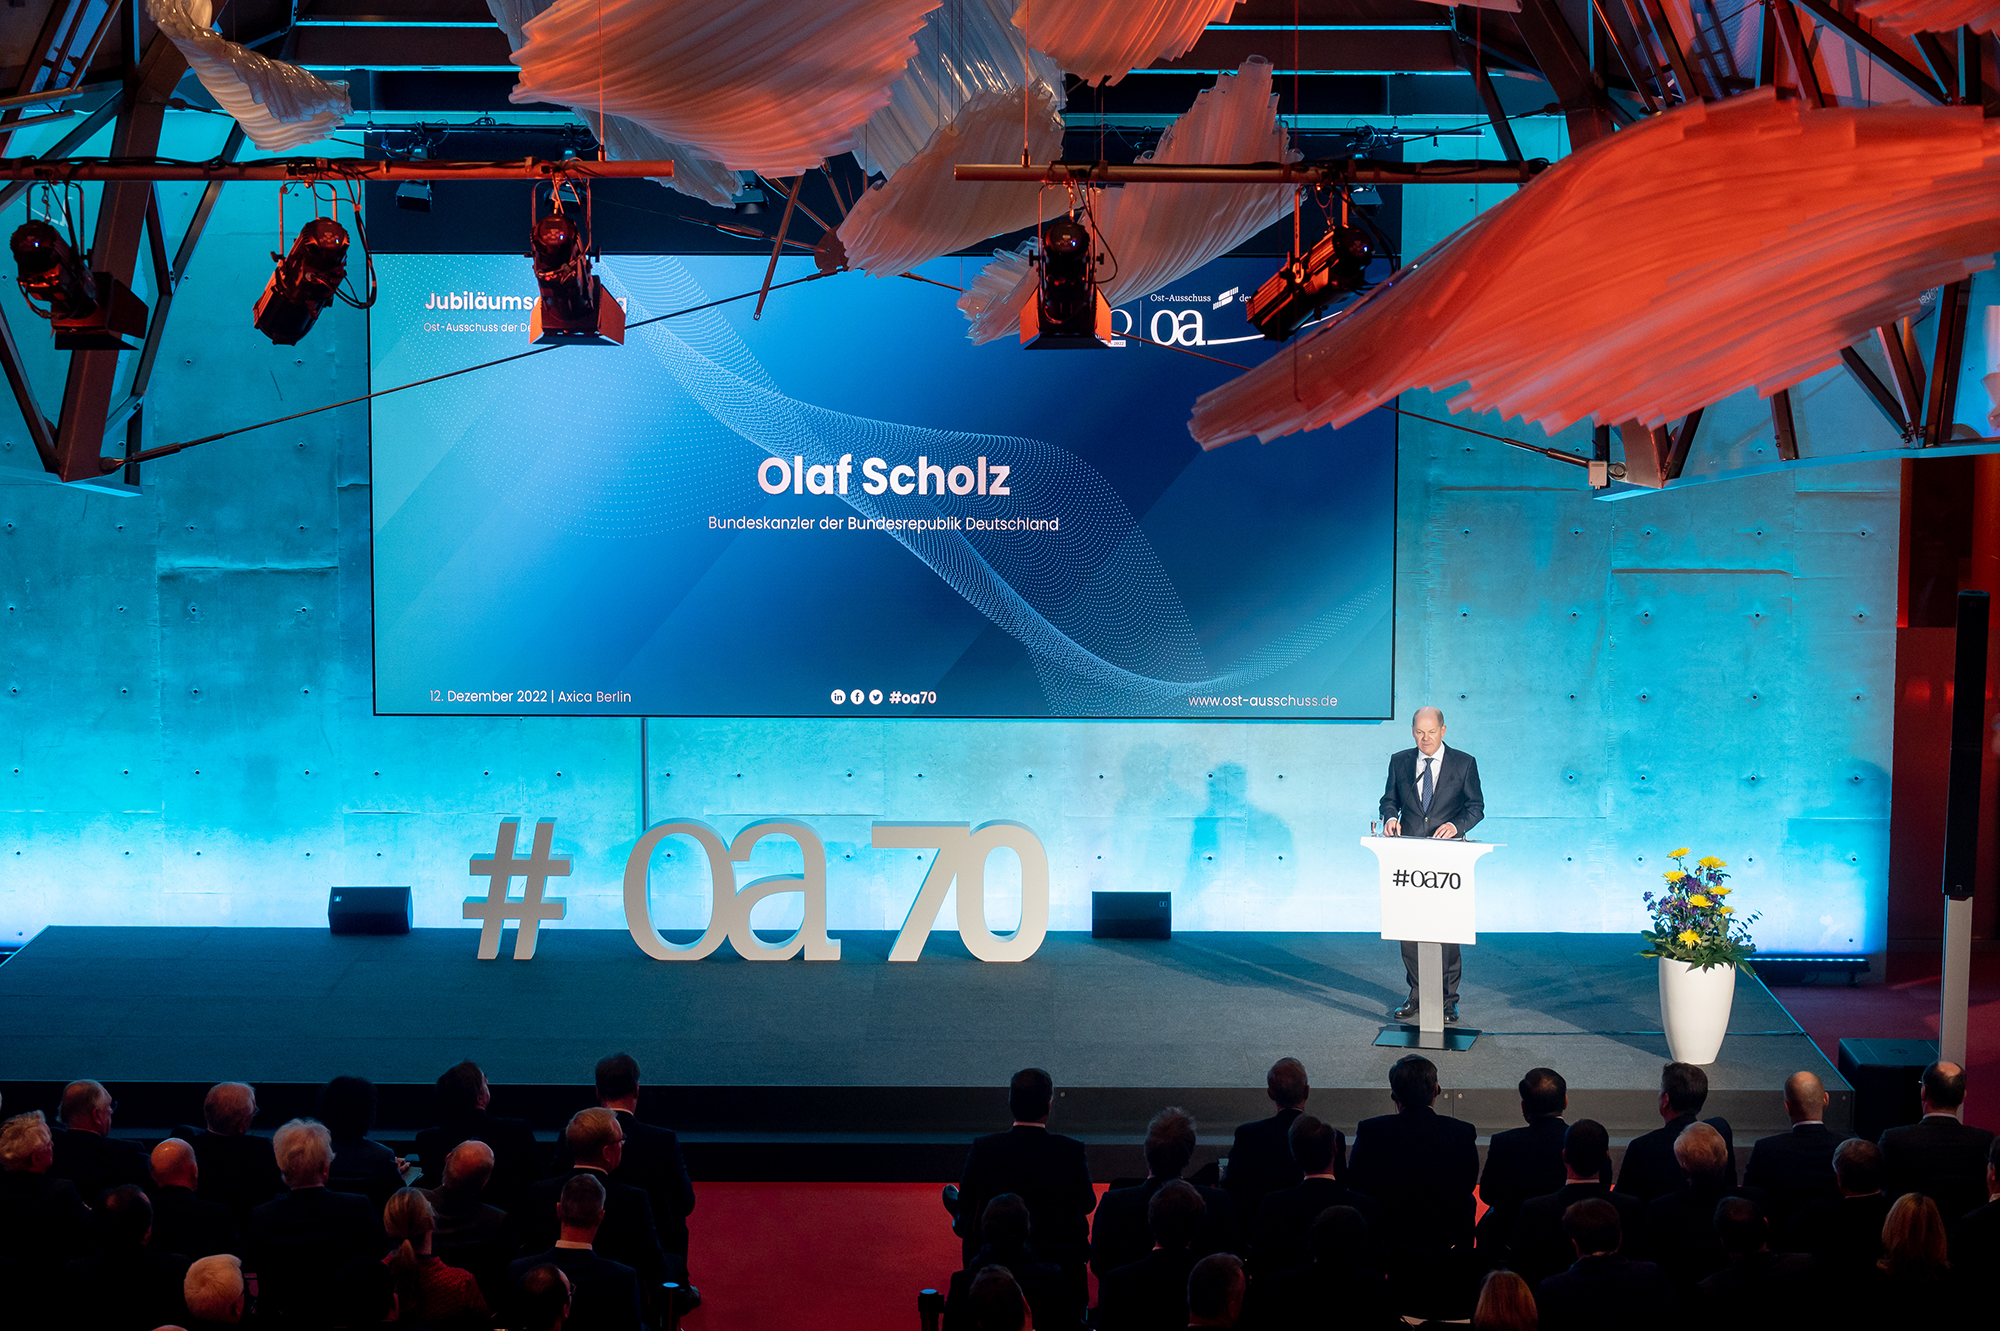 Olaf Scholz auf der Bühne des Jubiläums des Ost Ausschusses der Deutschen Wirtschaft